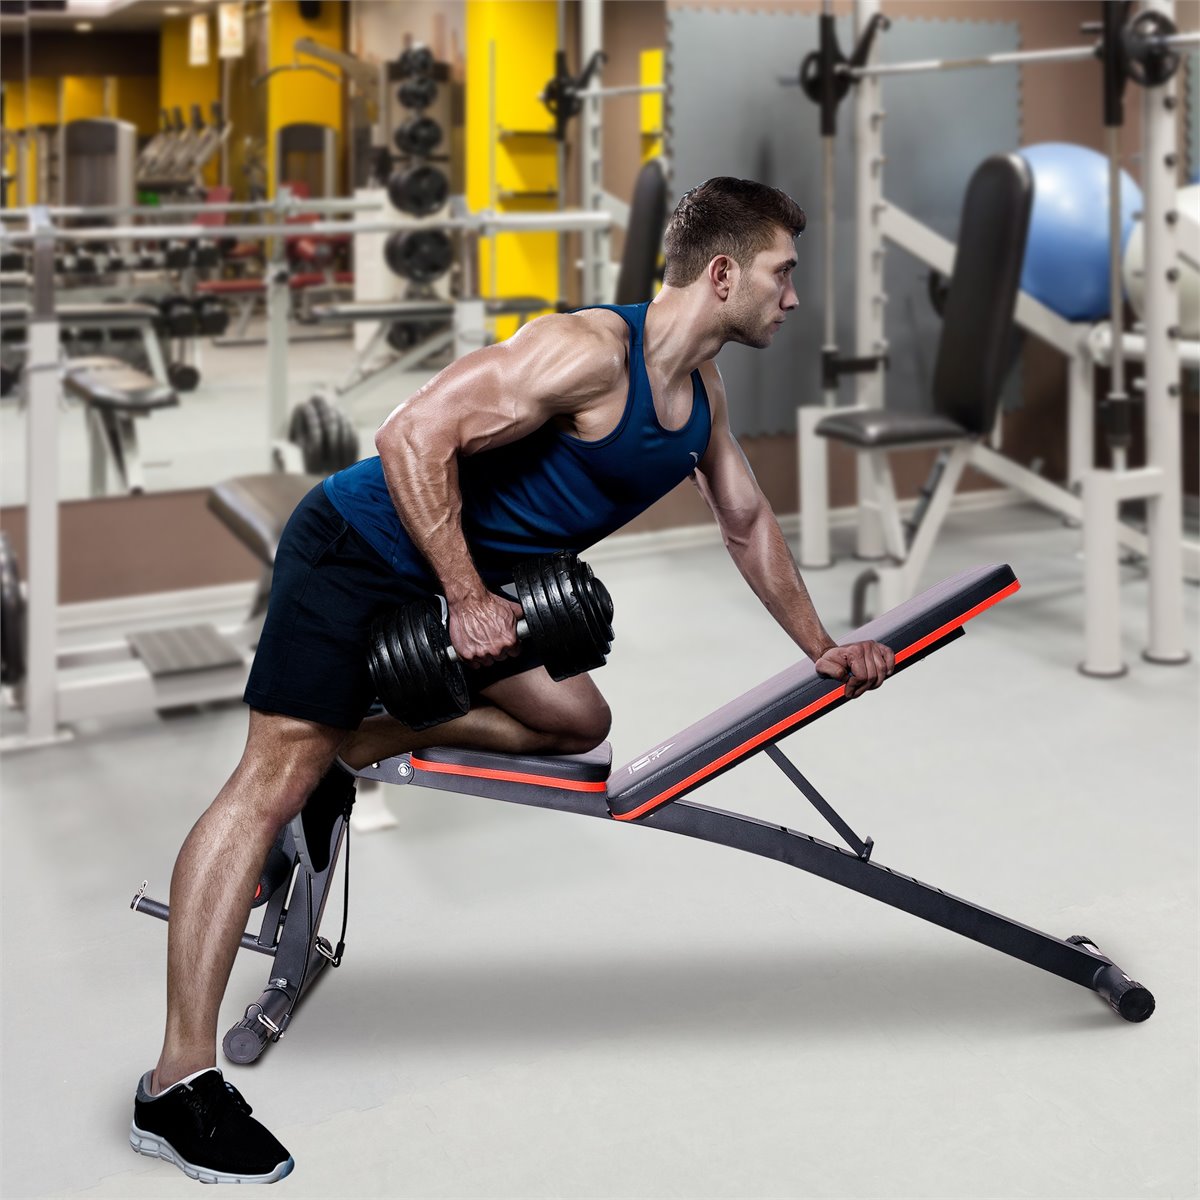 Homcom Banco de Musculación Banco de Pesas Maquina de Fitness Entrenar  Musculos 165x68x114cm con Respaldo…